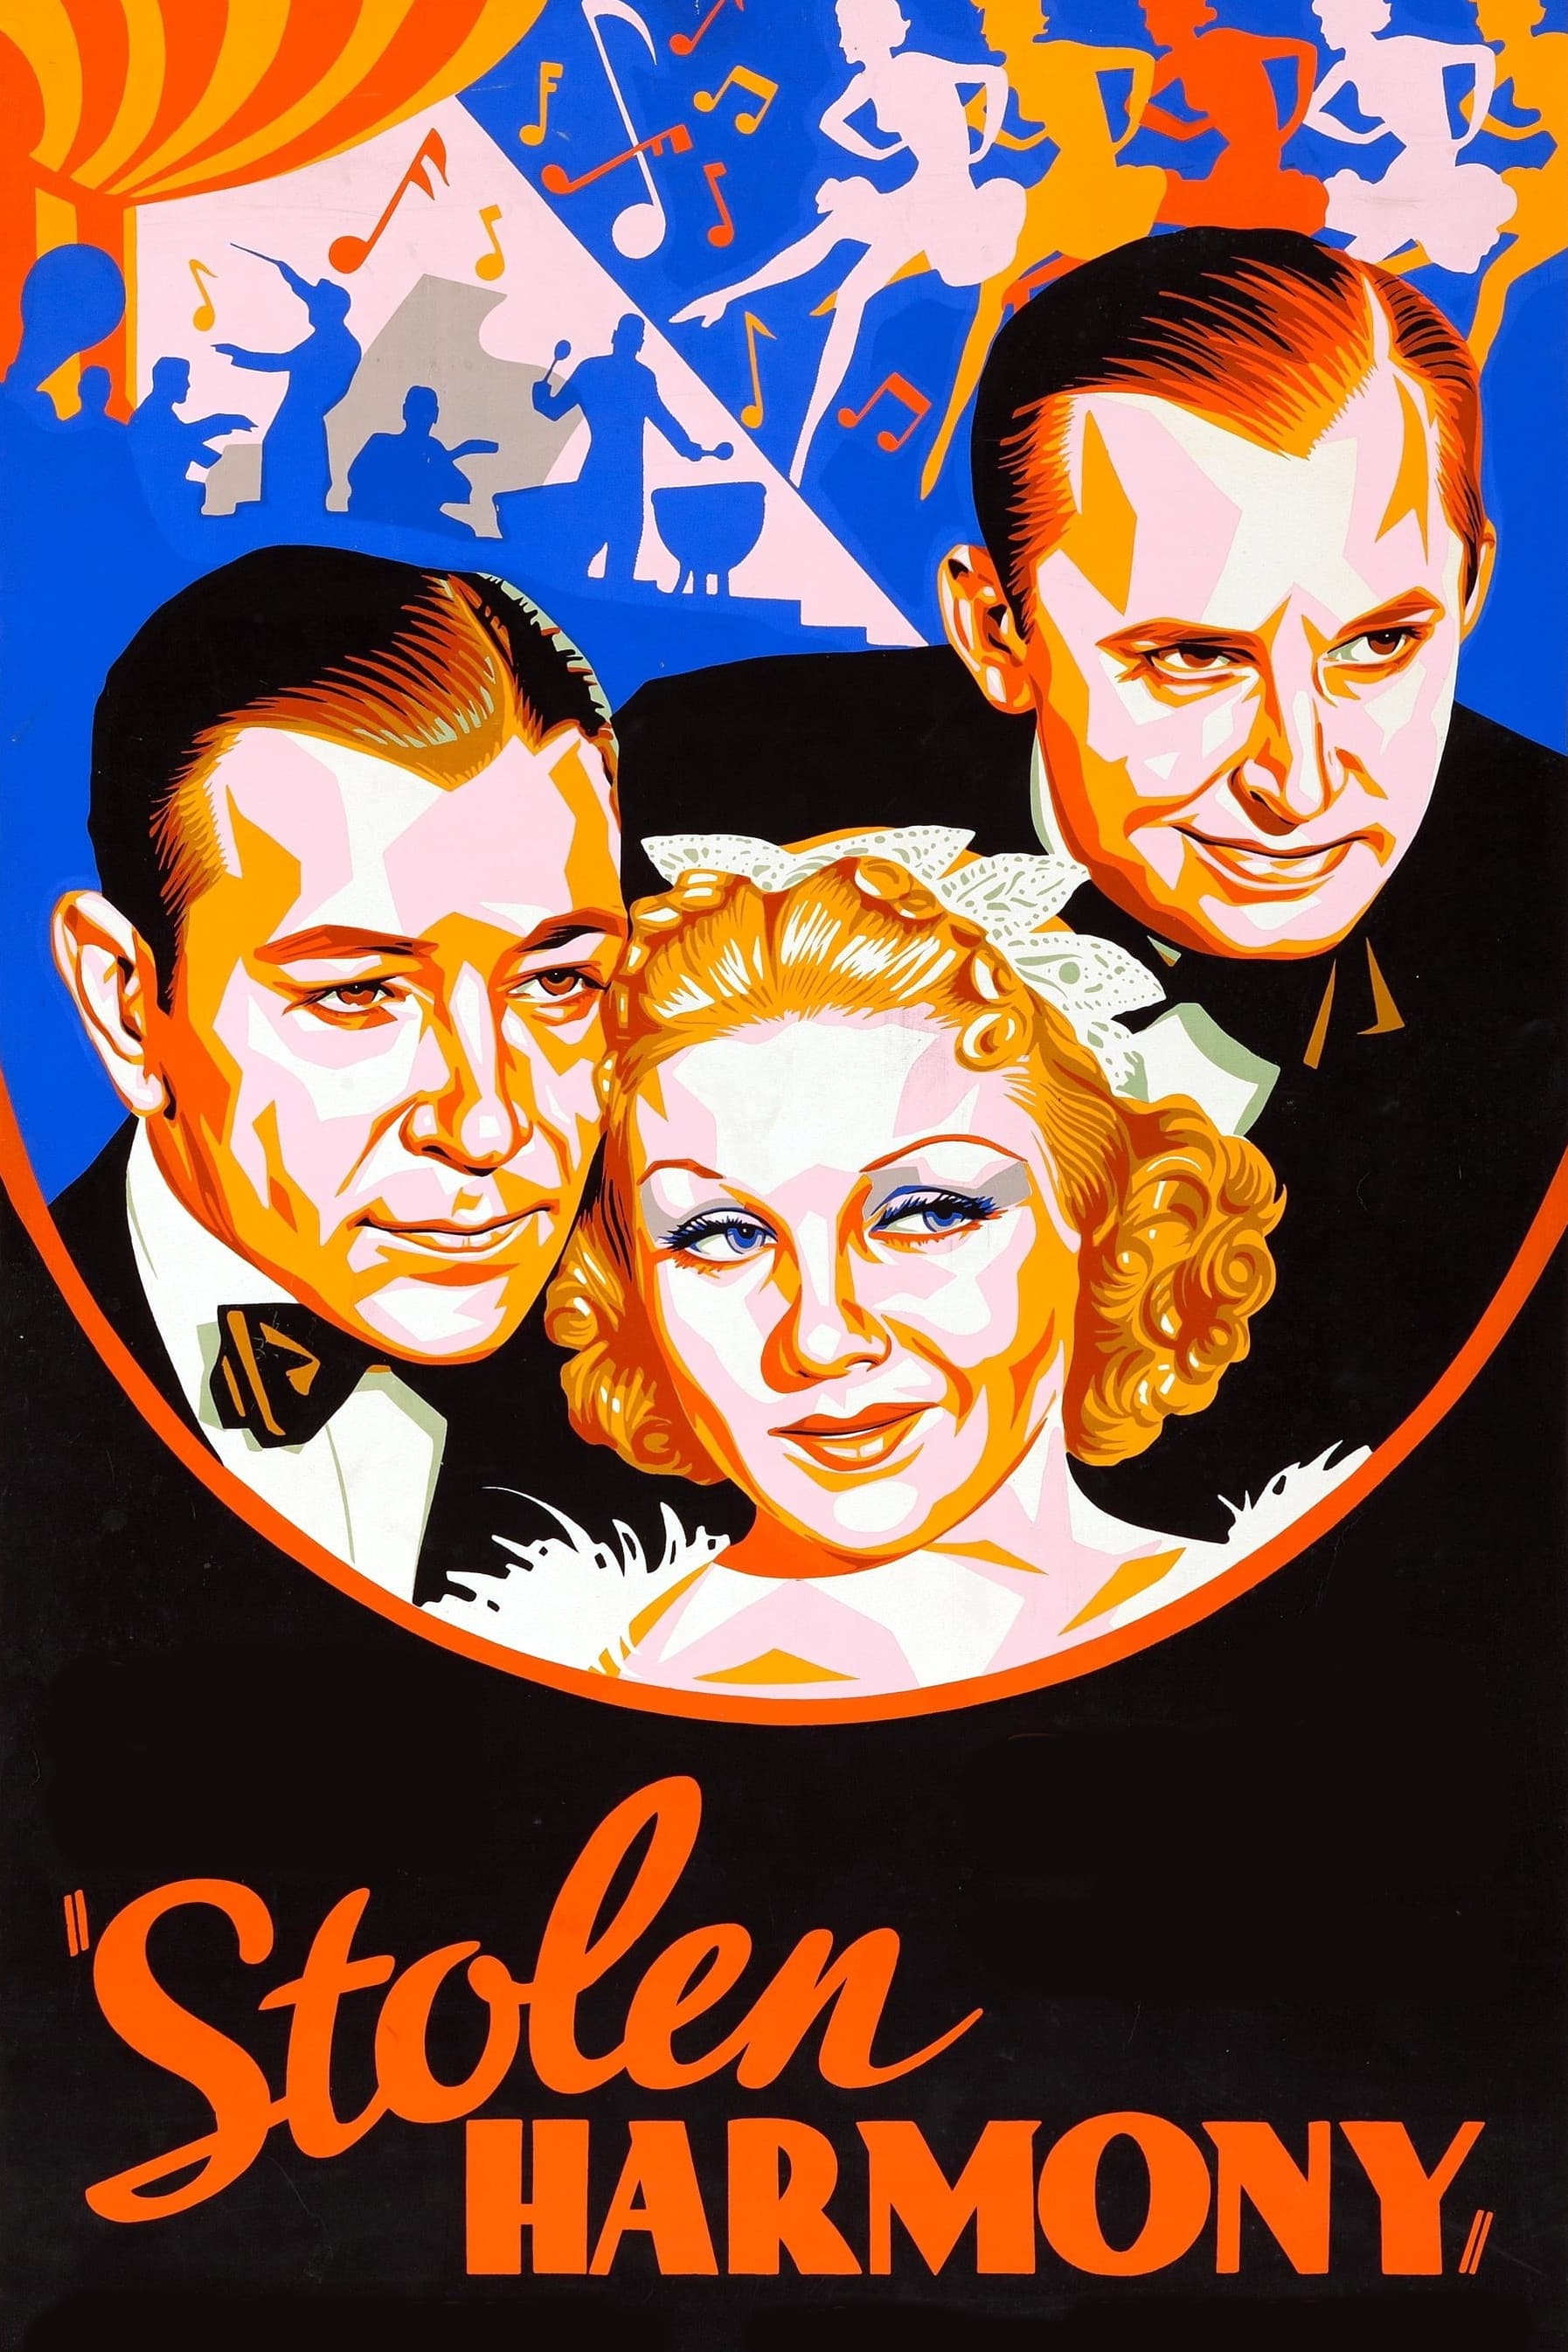 Stolen Harmony (1935)